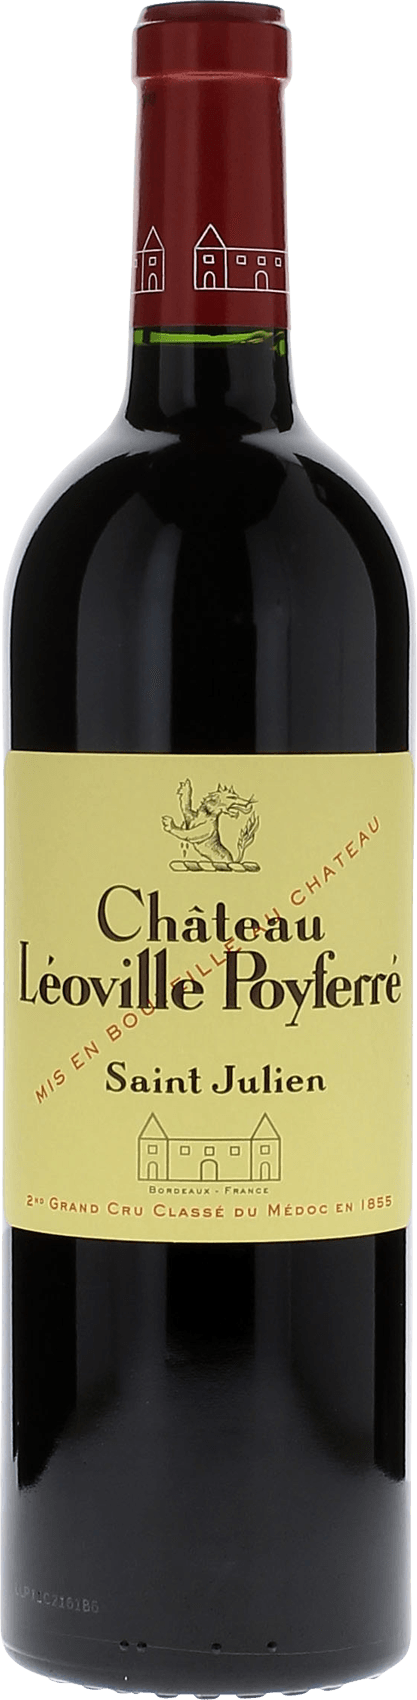 Leoville poyferre 1995 2me Grand cru class Saint-Julien, Bordeaux rouge